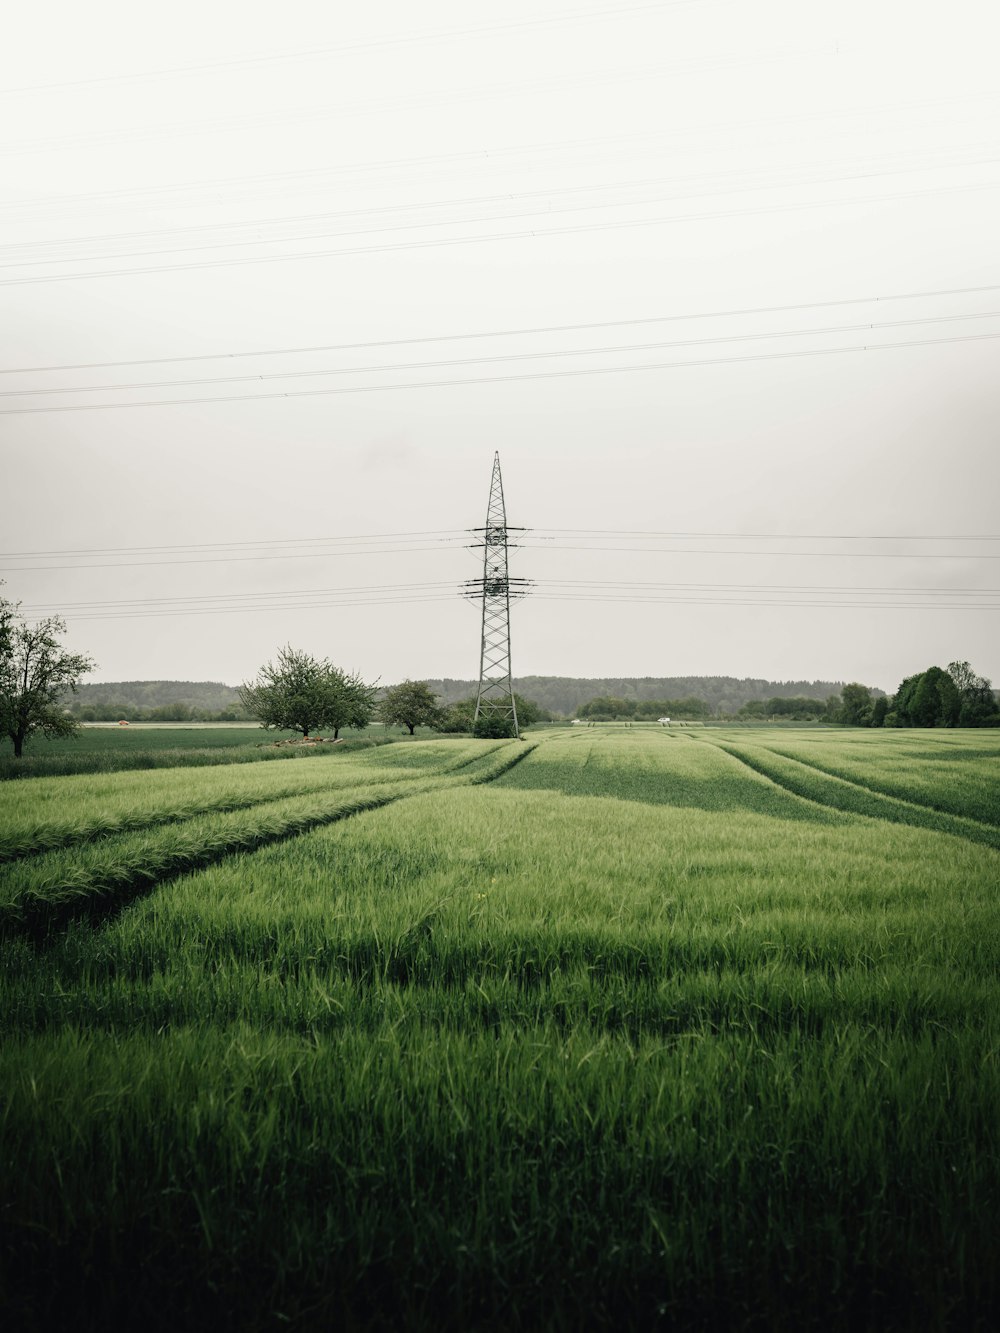 green grass field near electricity tower